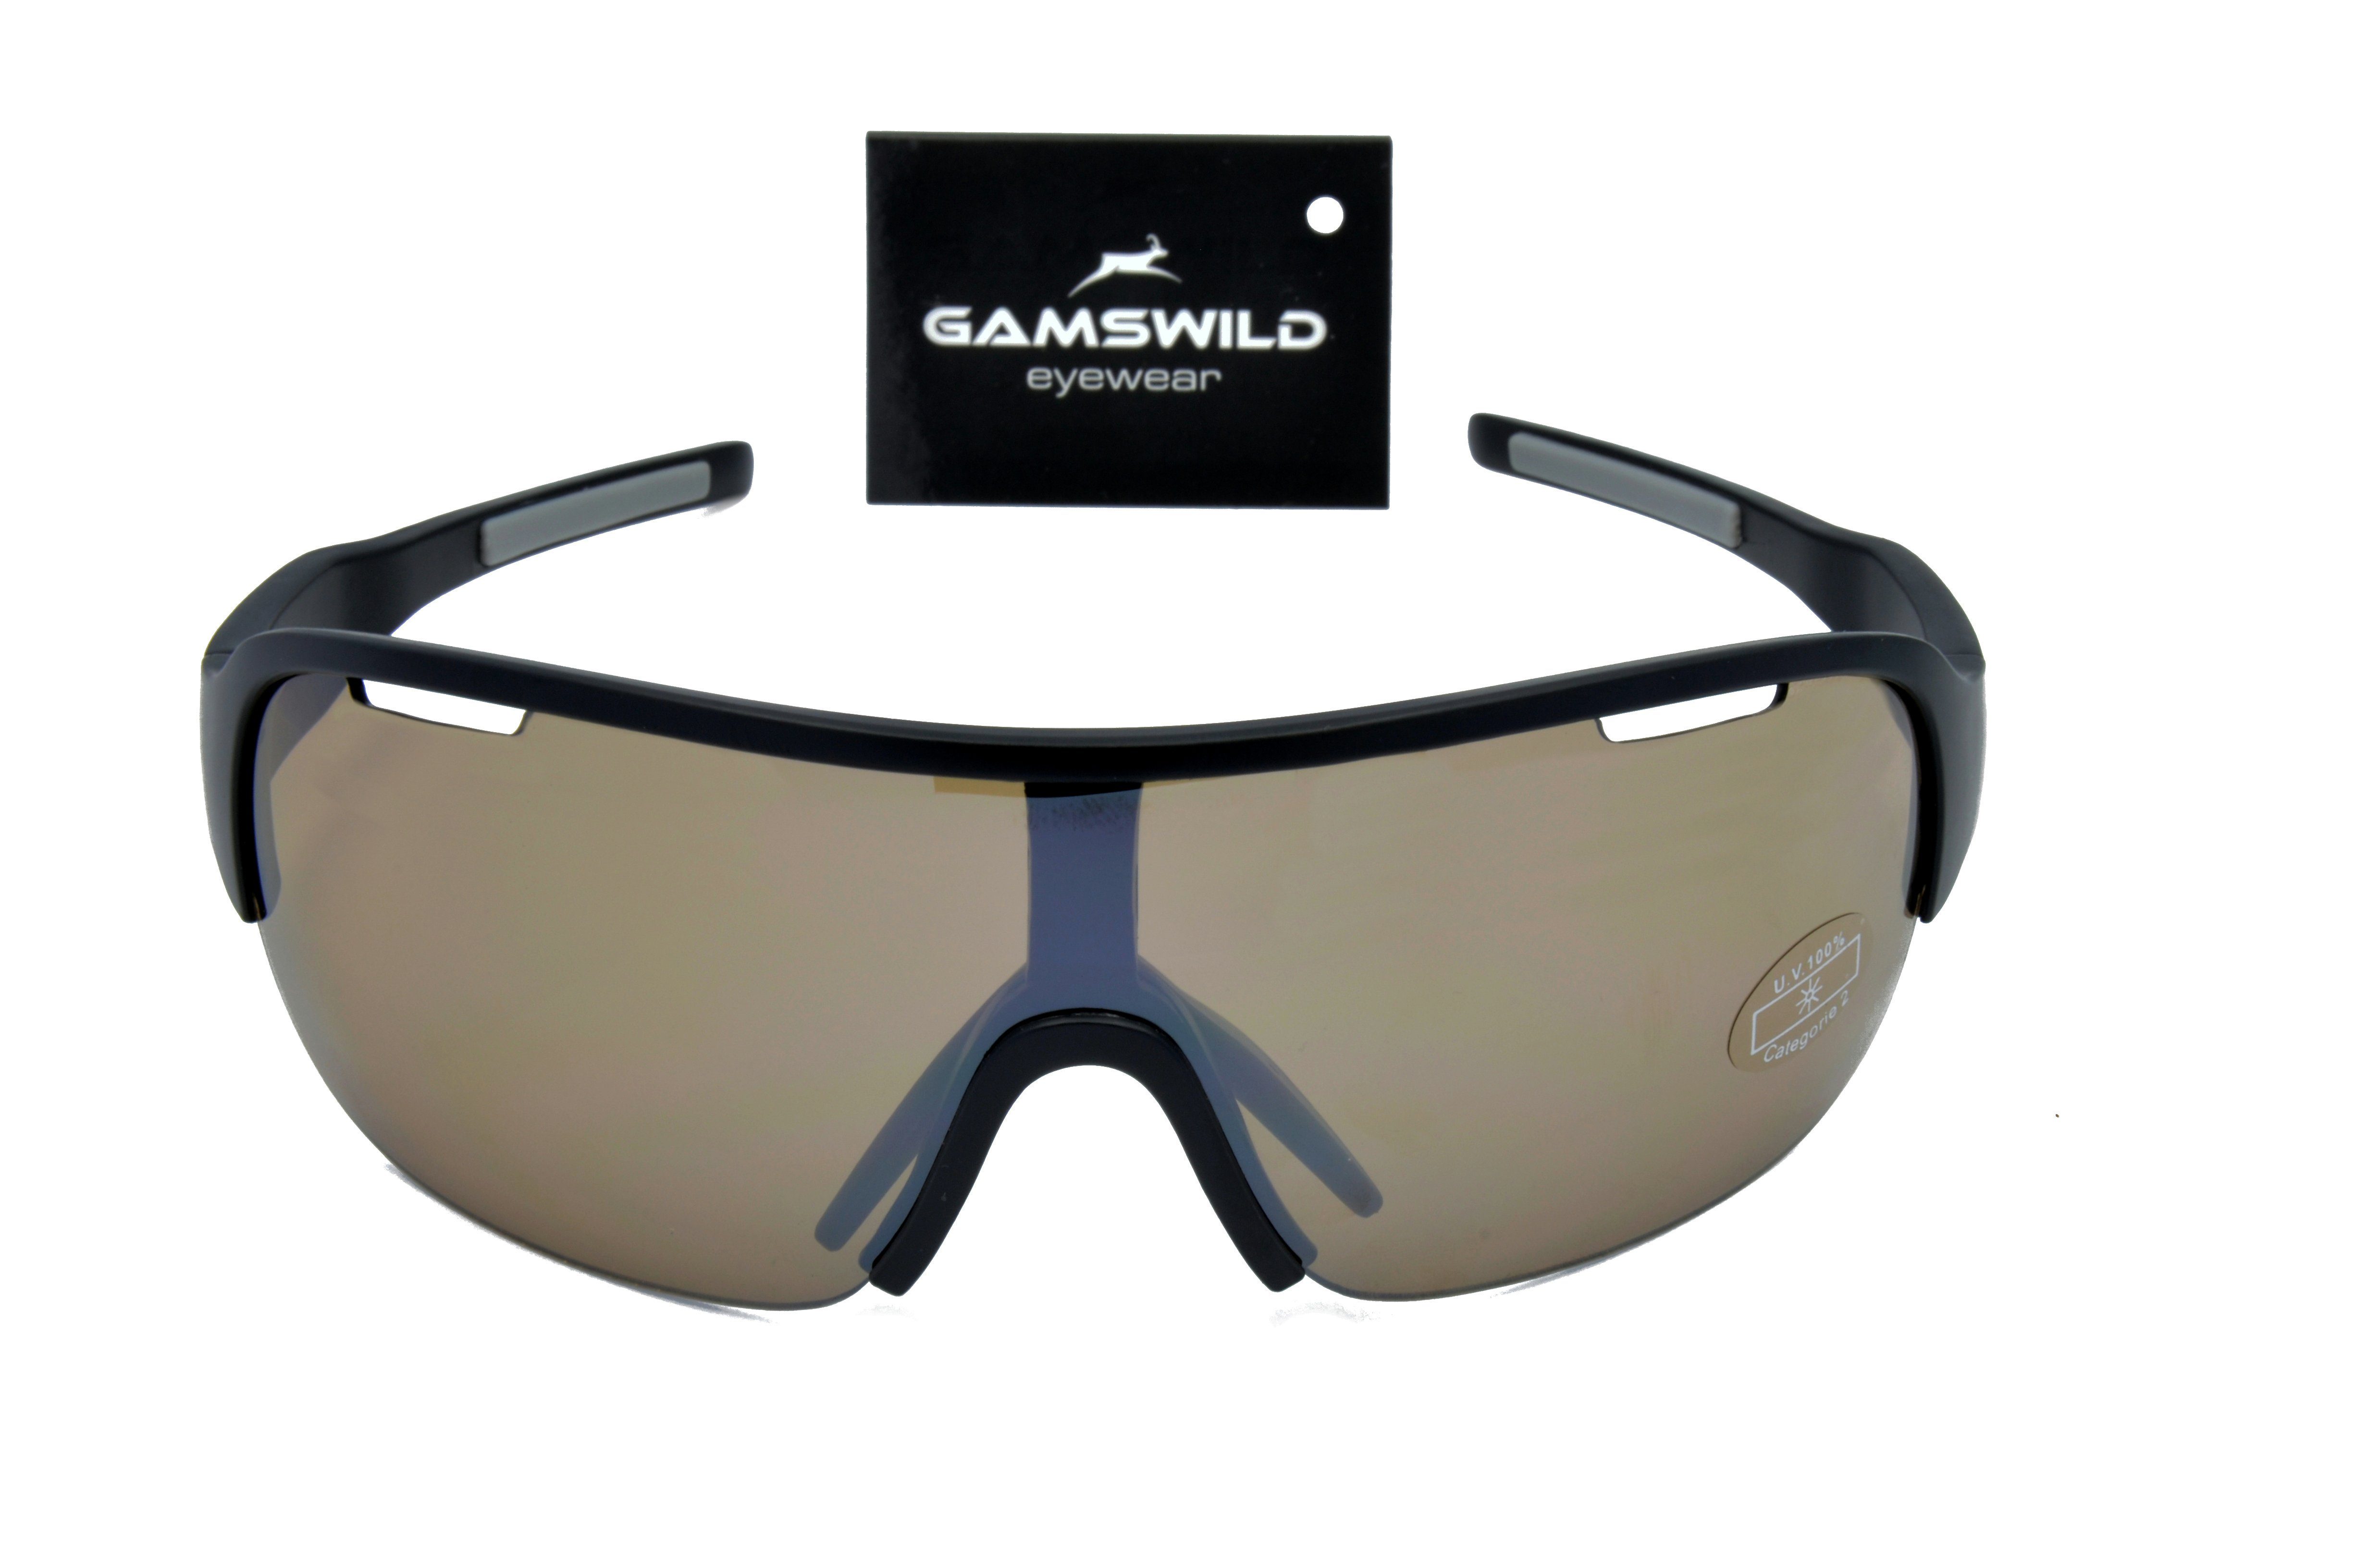 Gamswild WS8434 weiß, schwarz, Sportbrille Sonnenbrille Fahrradbrille Unisex, Damen Herren blau, TR90 Skibrille